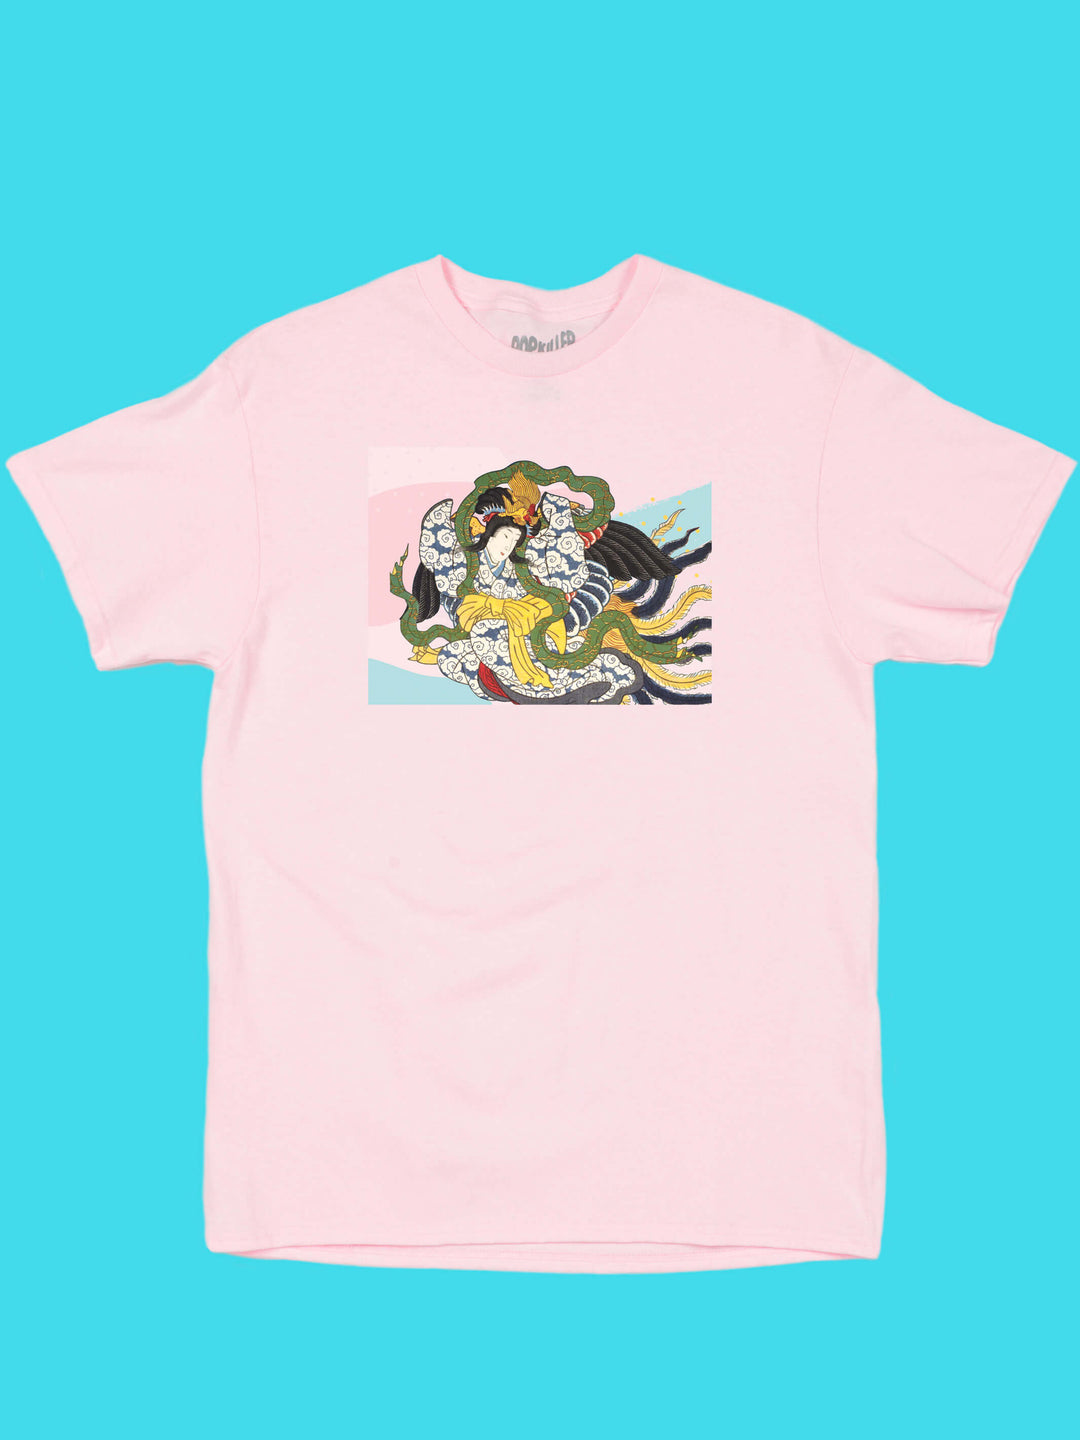 Pink Japanese tennyo t-shirt.